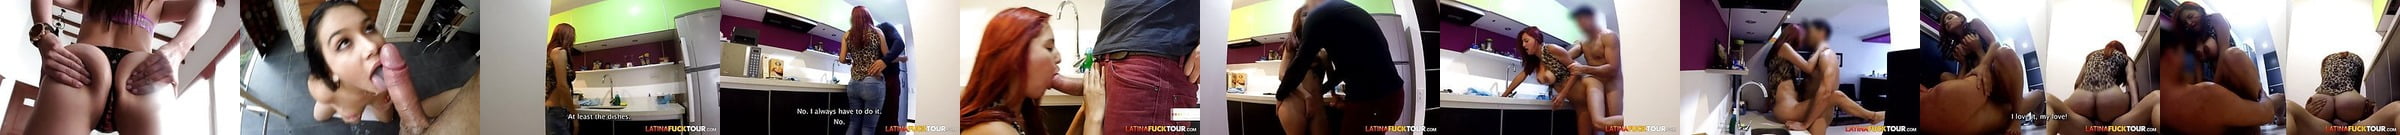 Vidéos Porno Latina Fuck Tour Durée Hd Xhamster